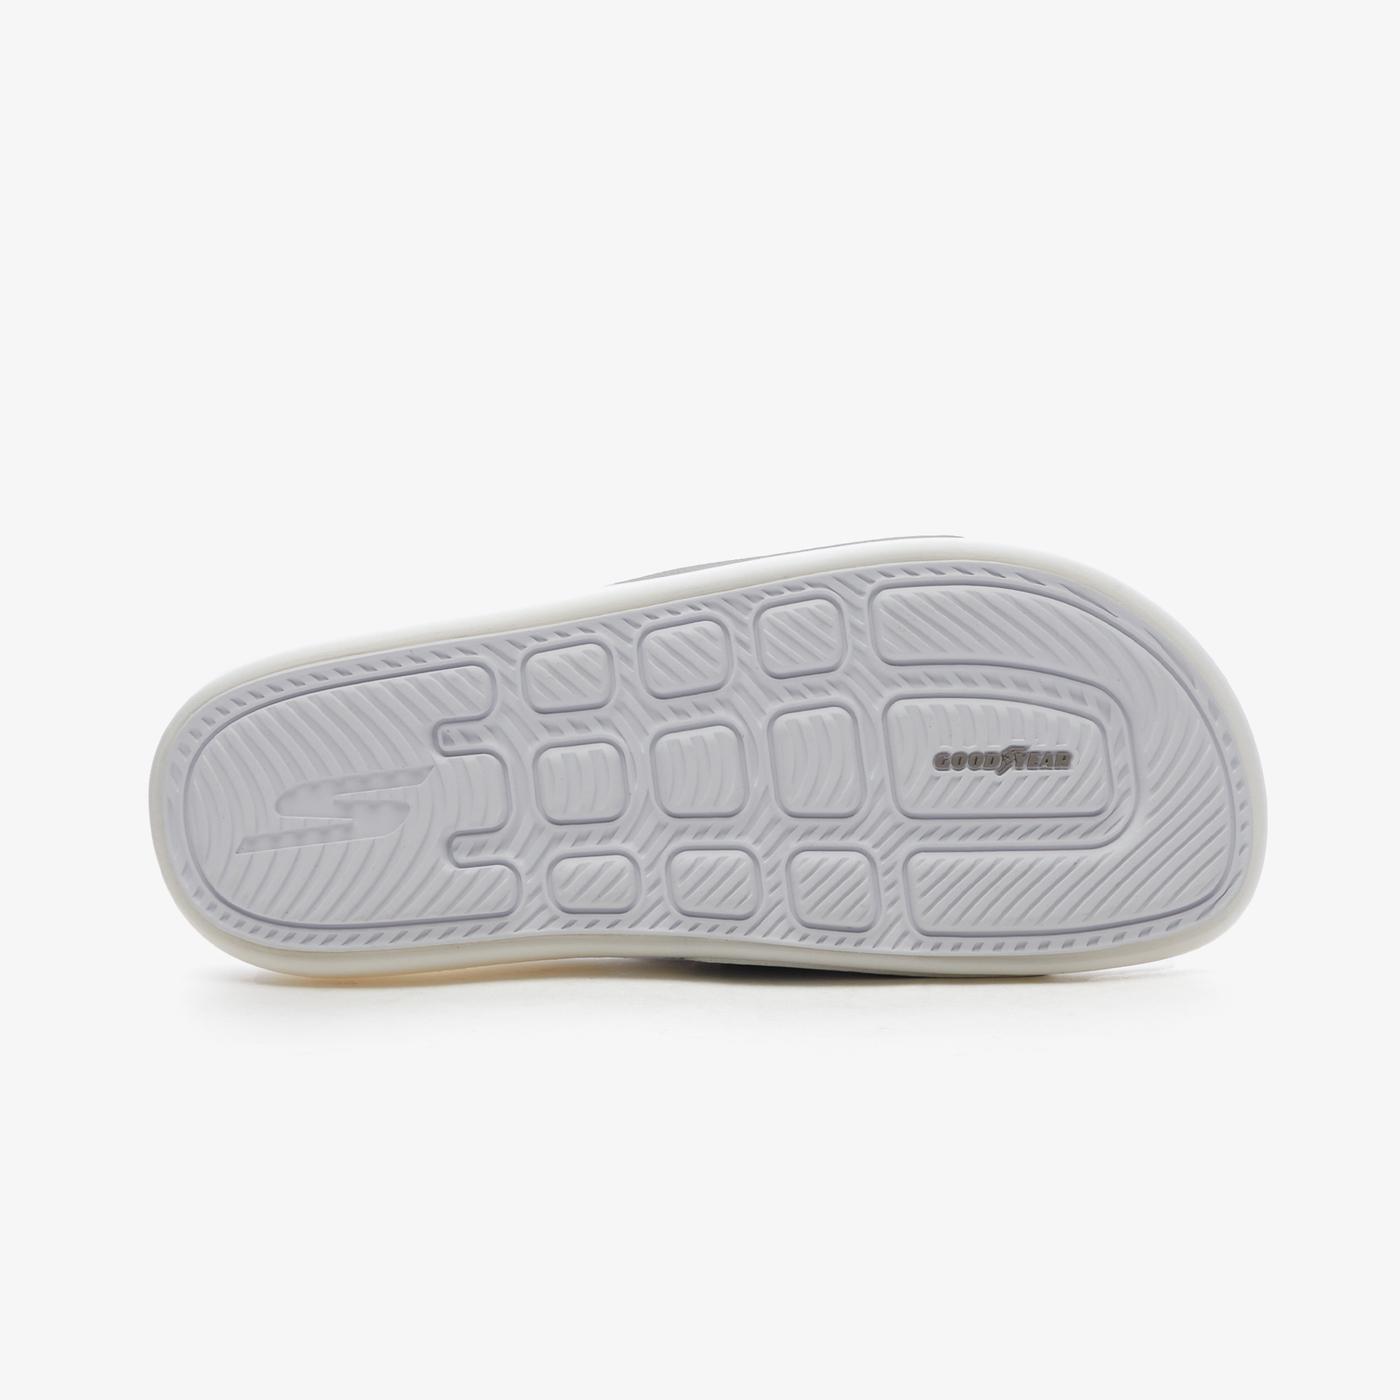 Skechers Hyper Slide - Shine On Kadın Gri Sandalet